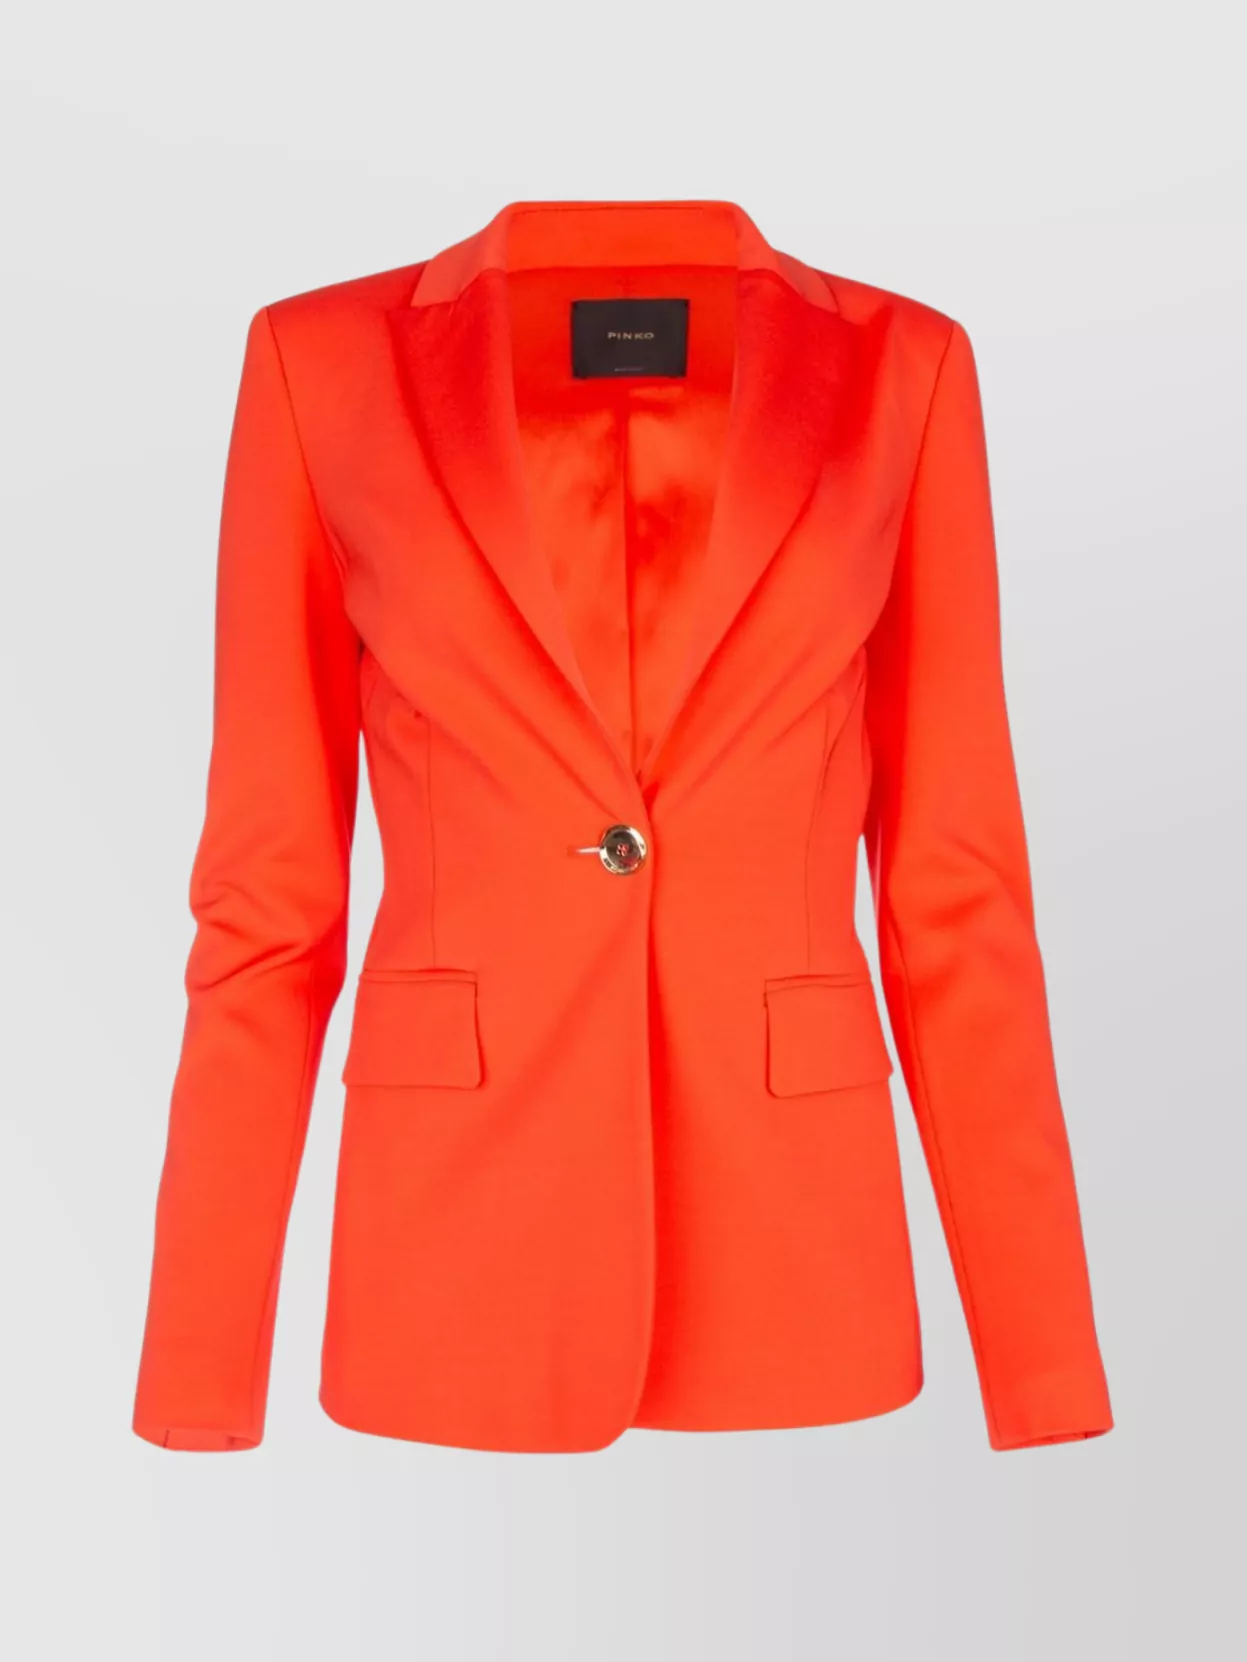 Pinko Flap Pocket Notch Lapel Structured Shoulder Jacket In Orange